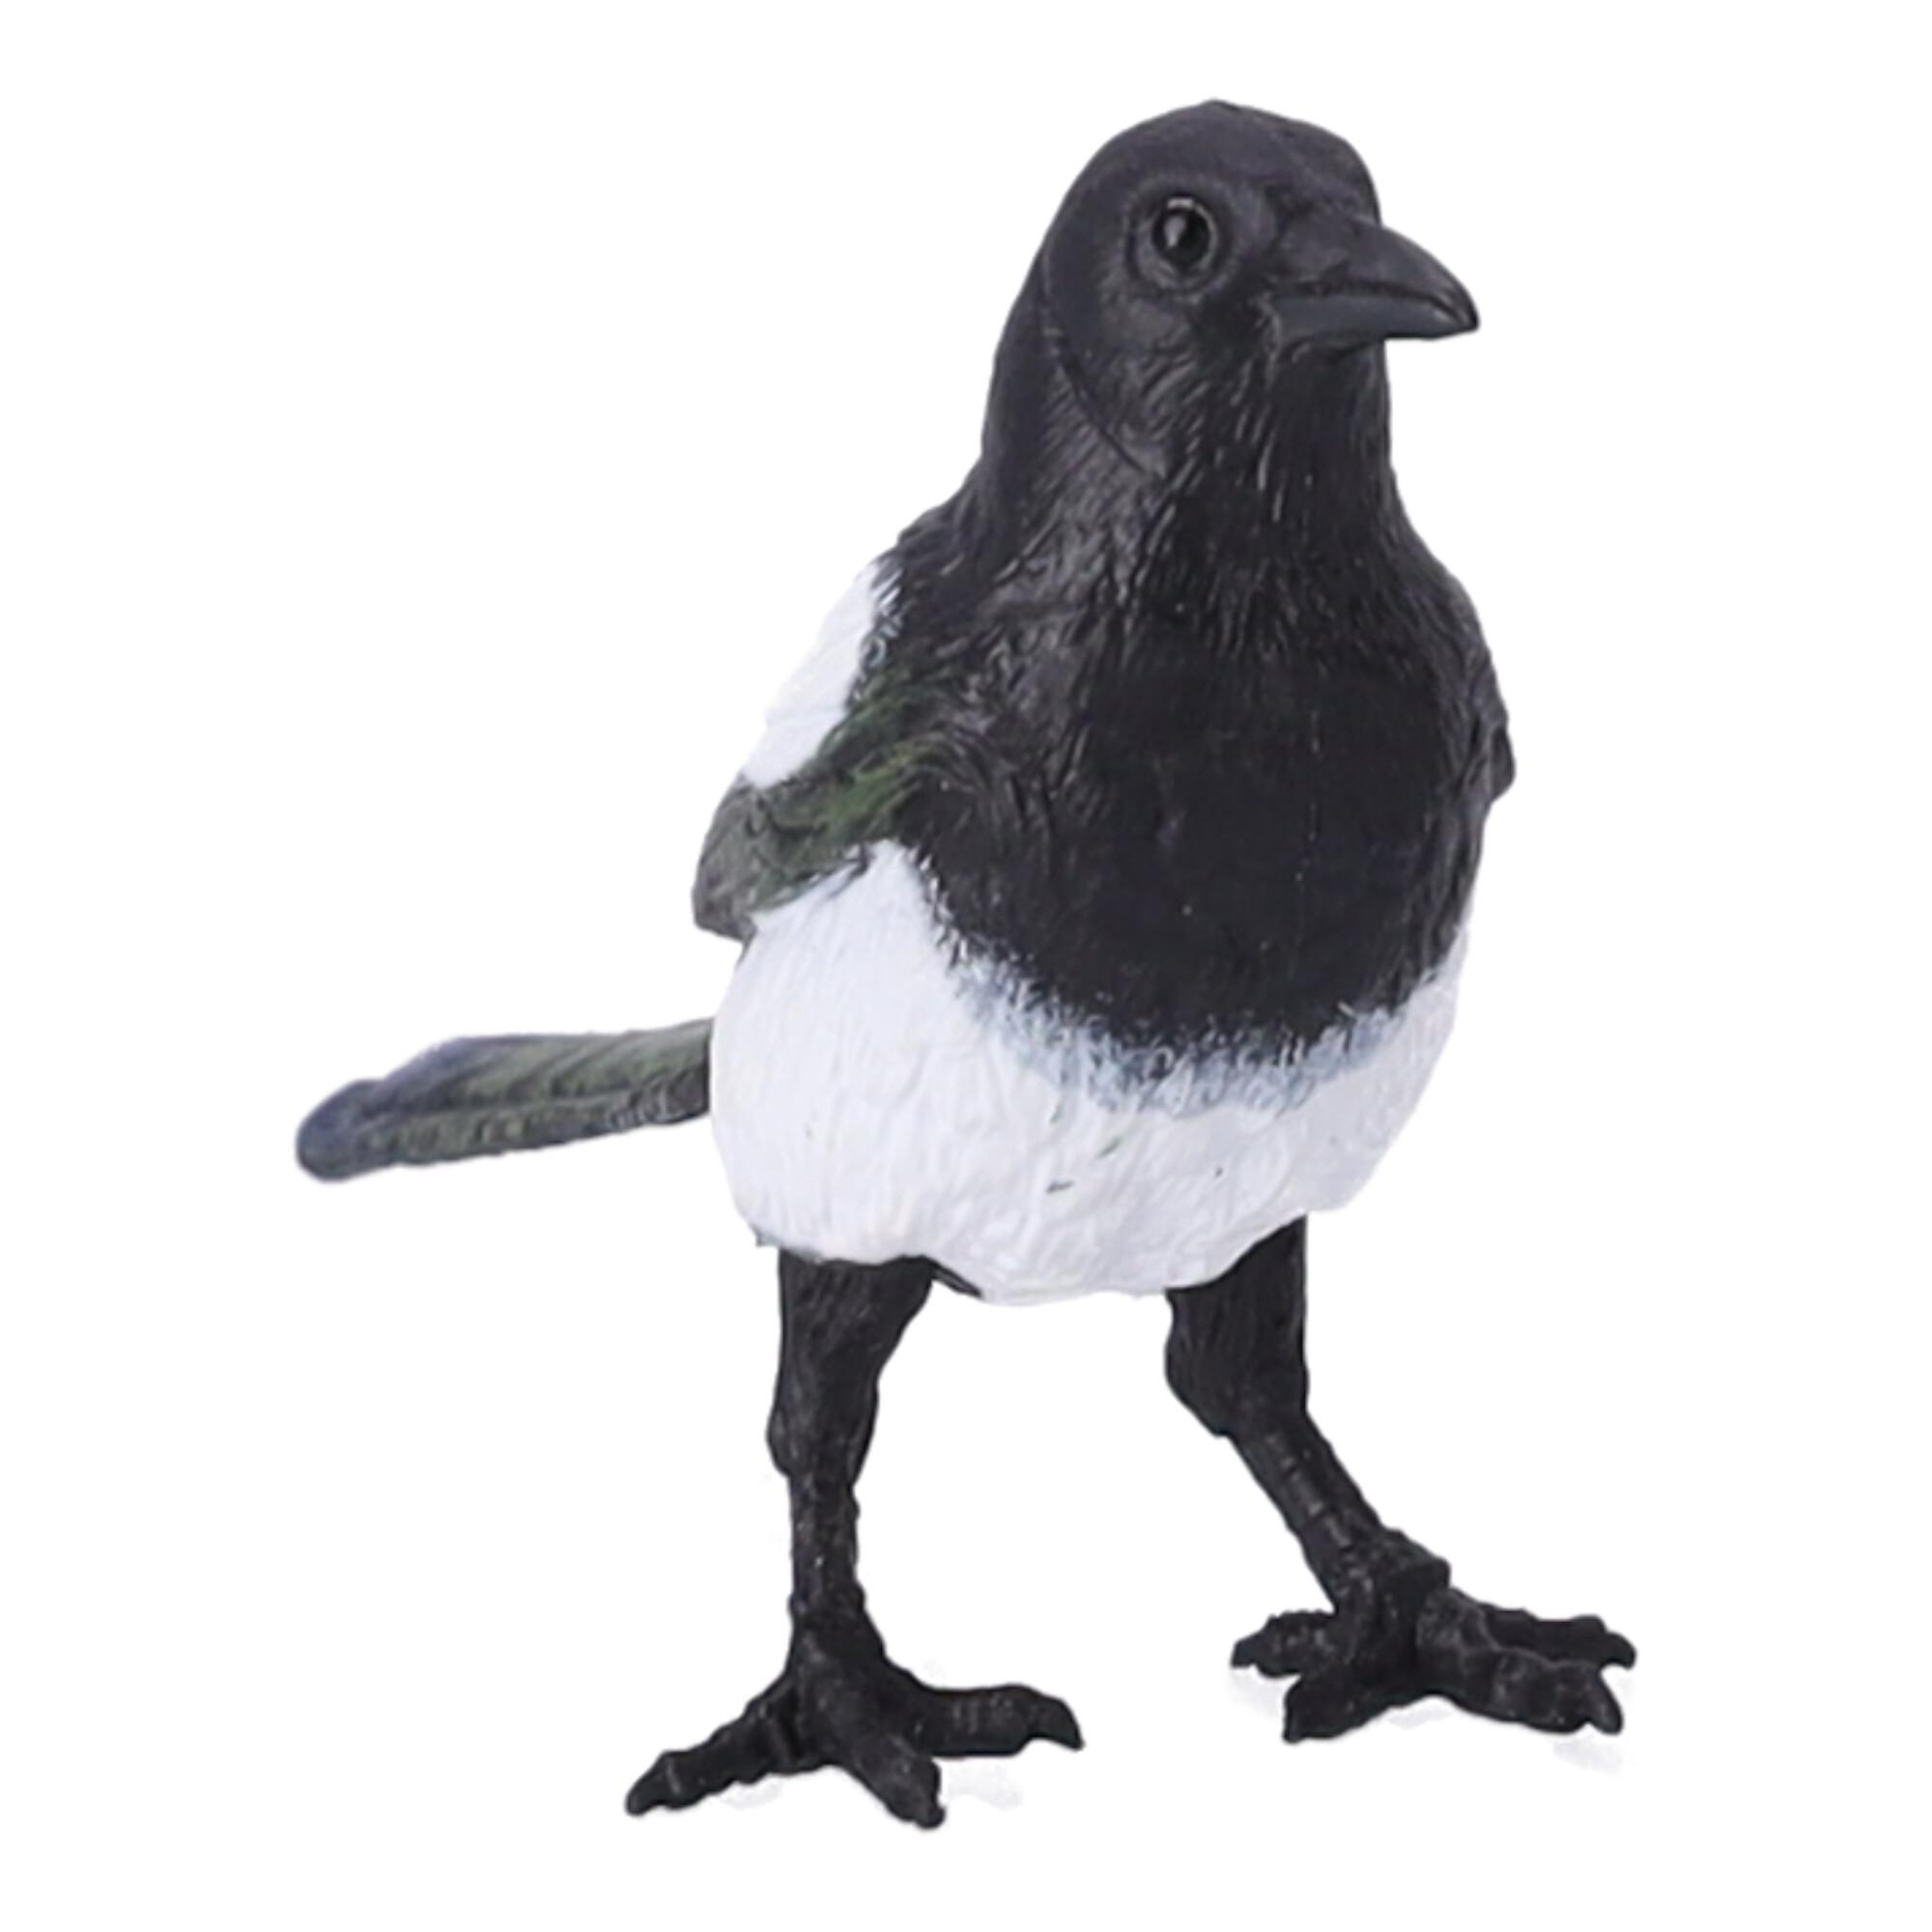 Figurka kolekcjonerska Ptak Sroka, Papo